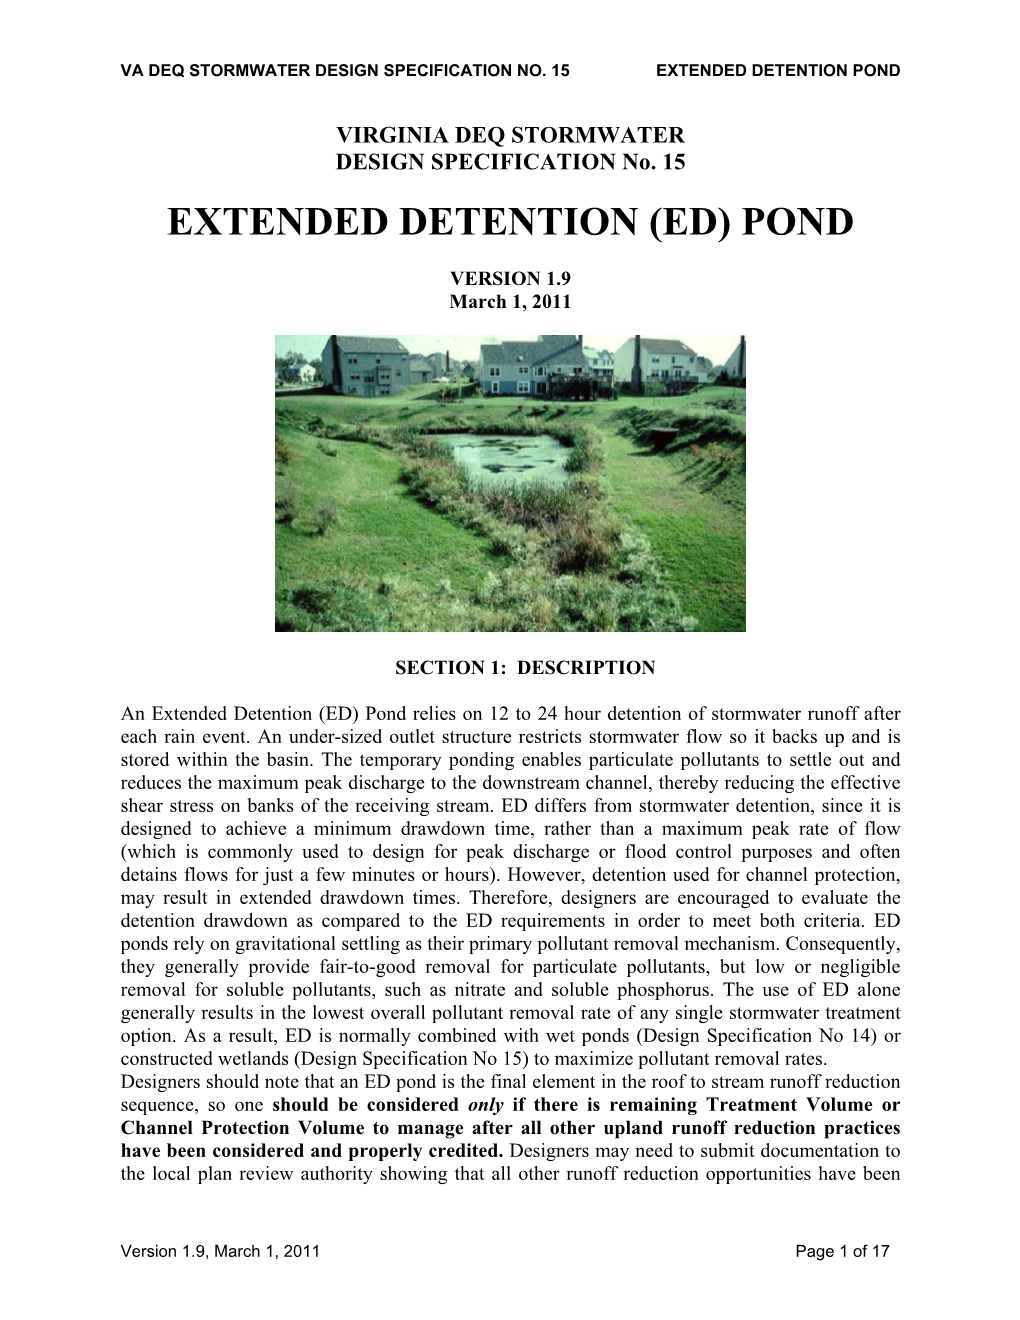 Extended Detention (Ed) Pond